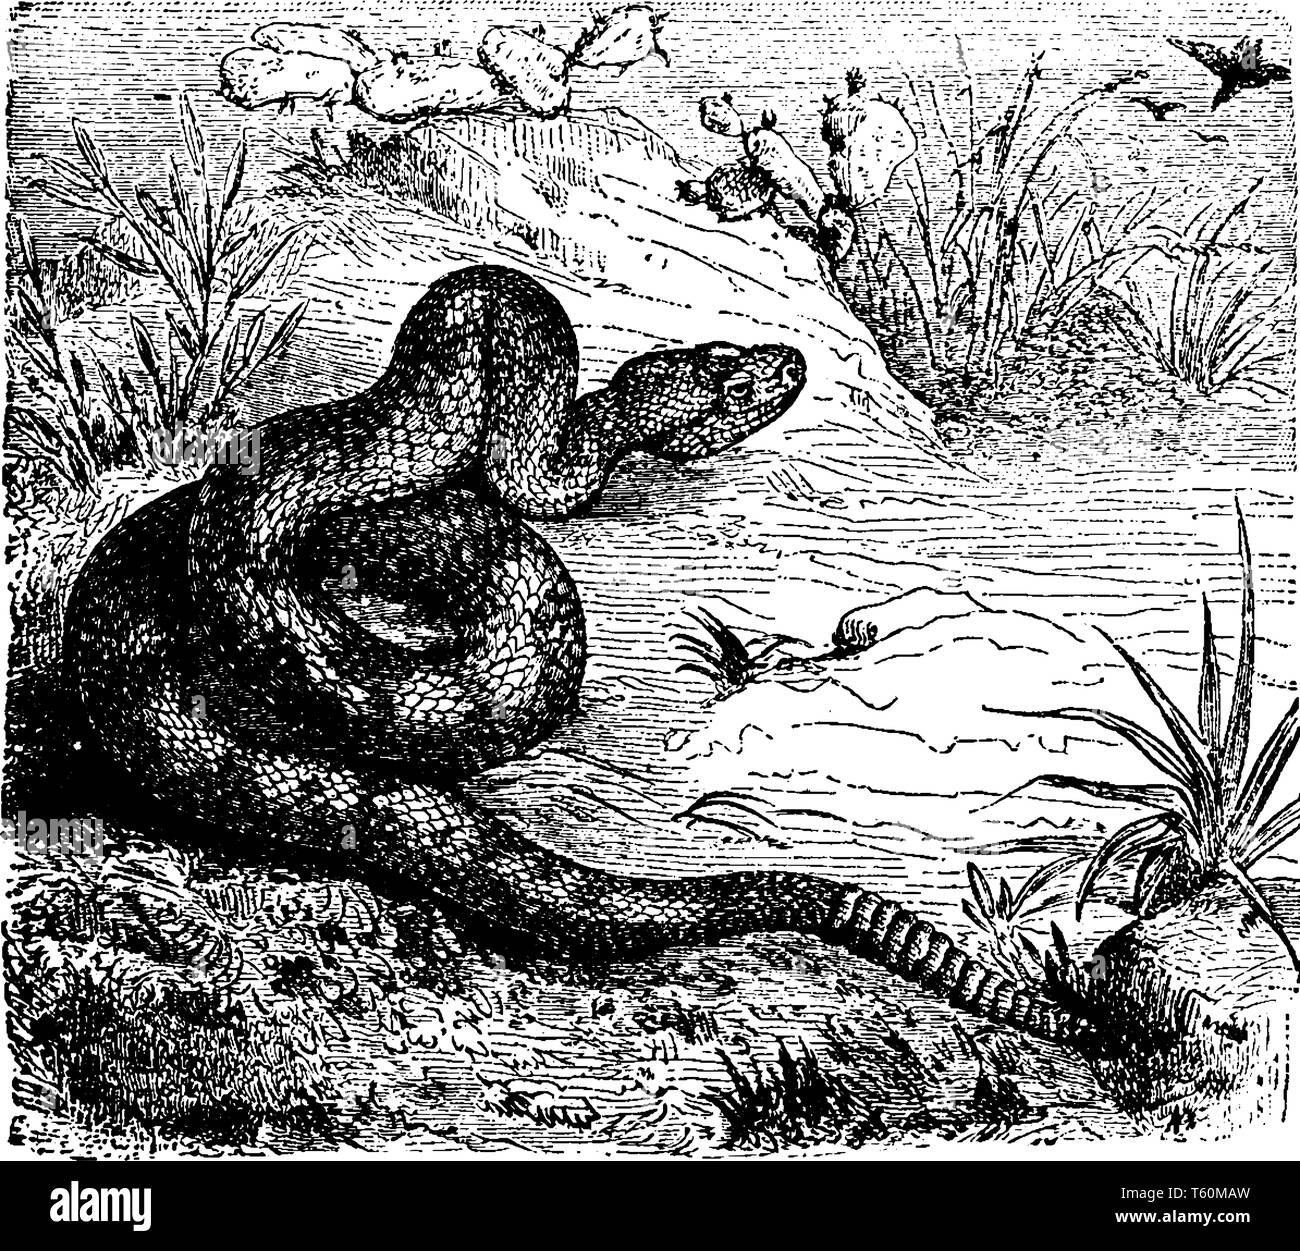 Rattlesnake settentrionale è una specie di velenose rattlesnakes endemico degli Stati Uniti orientali, vintage disegno della linea di incisione o illustrazione. Illustrazione Vettoriale